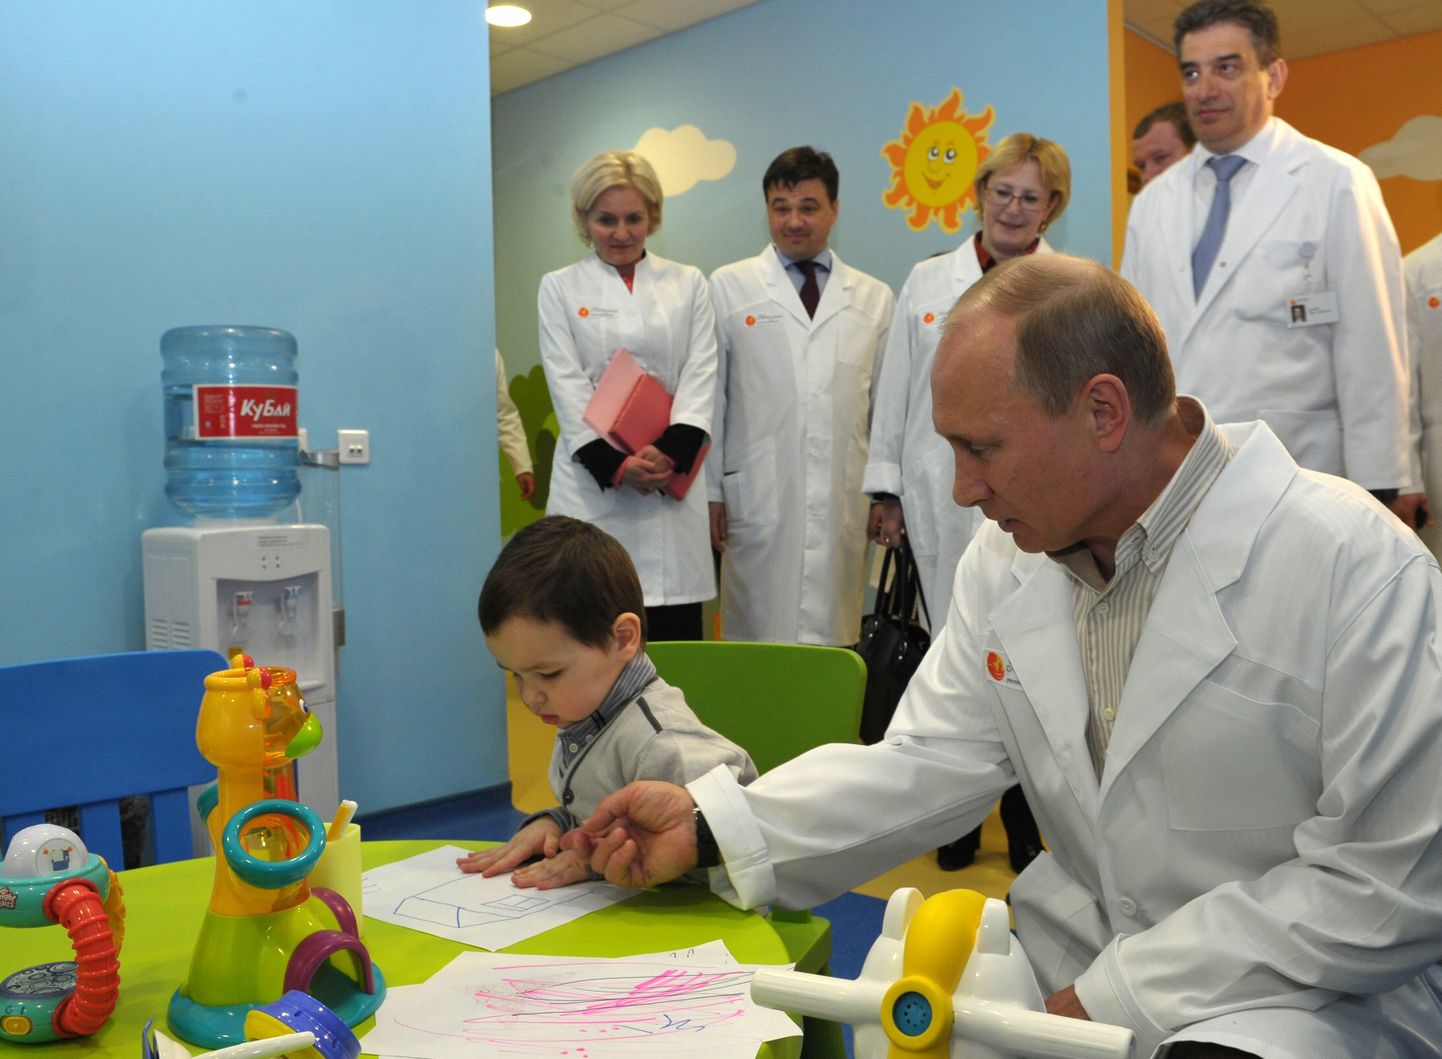 Vladimir Putin lastehaiglat külastamas.